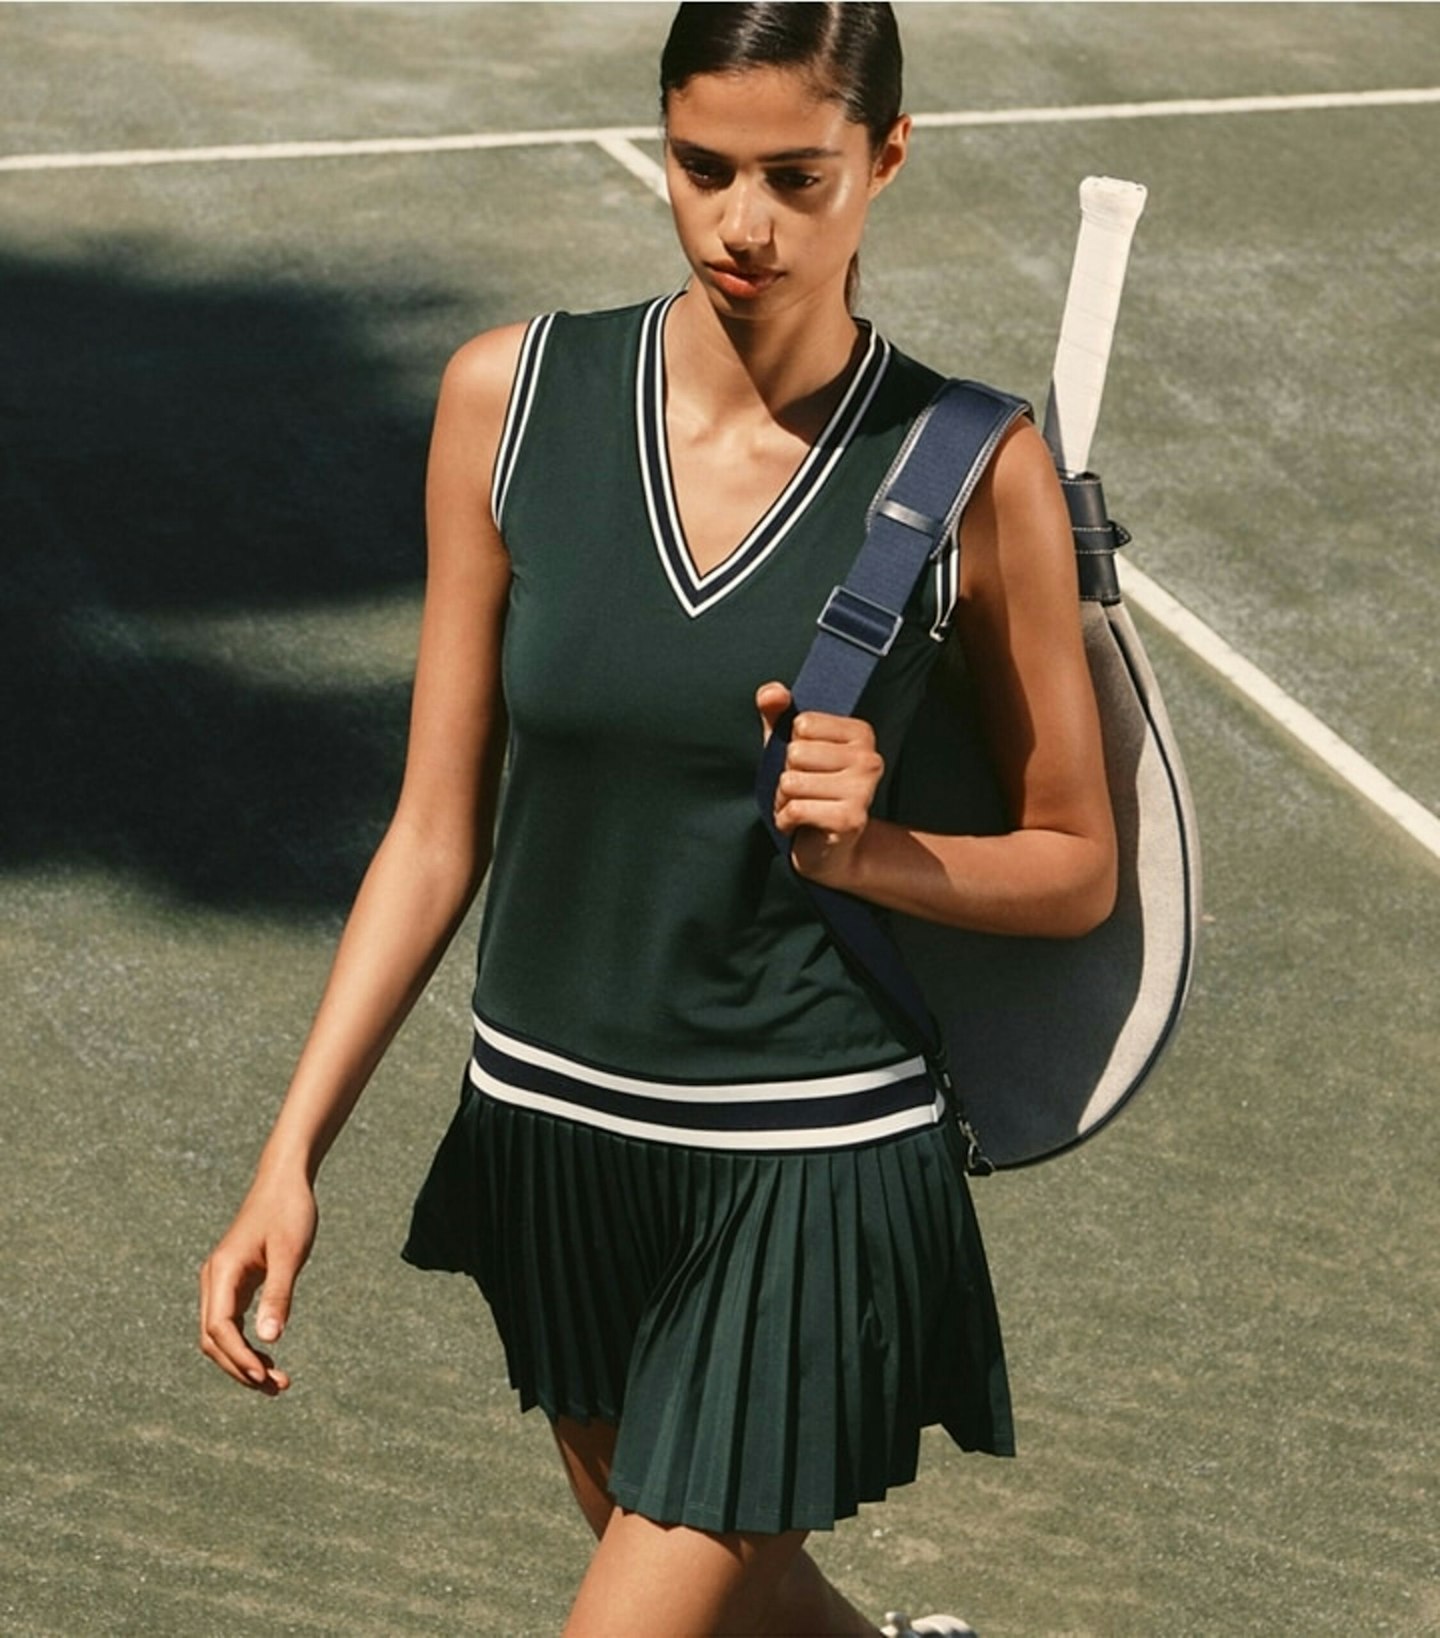 Tory Burch tennis skirt